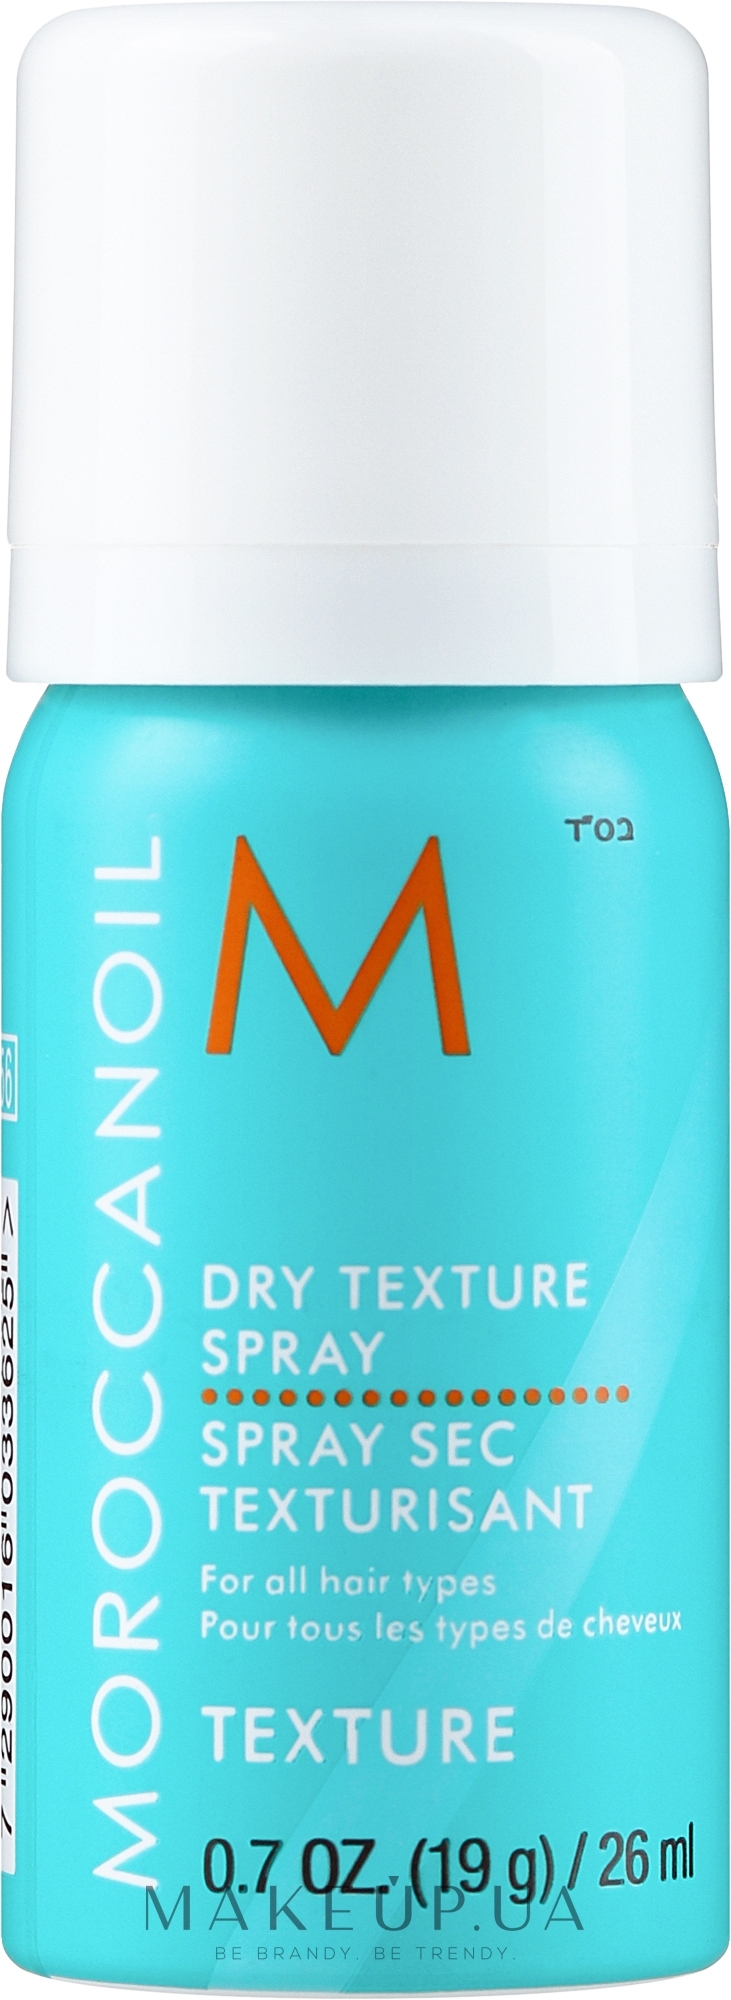 Сухий текстурний спрей для волосся - Moroccanoil Dry Texture Spray — фото 26ml